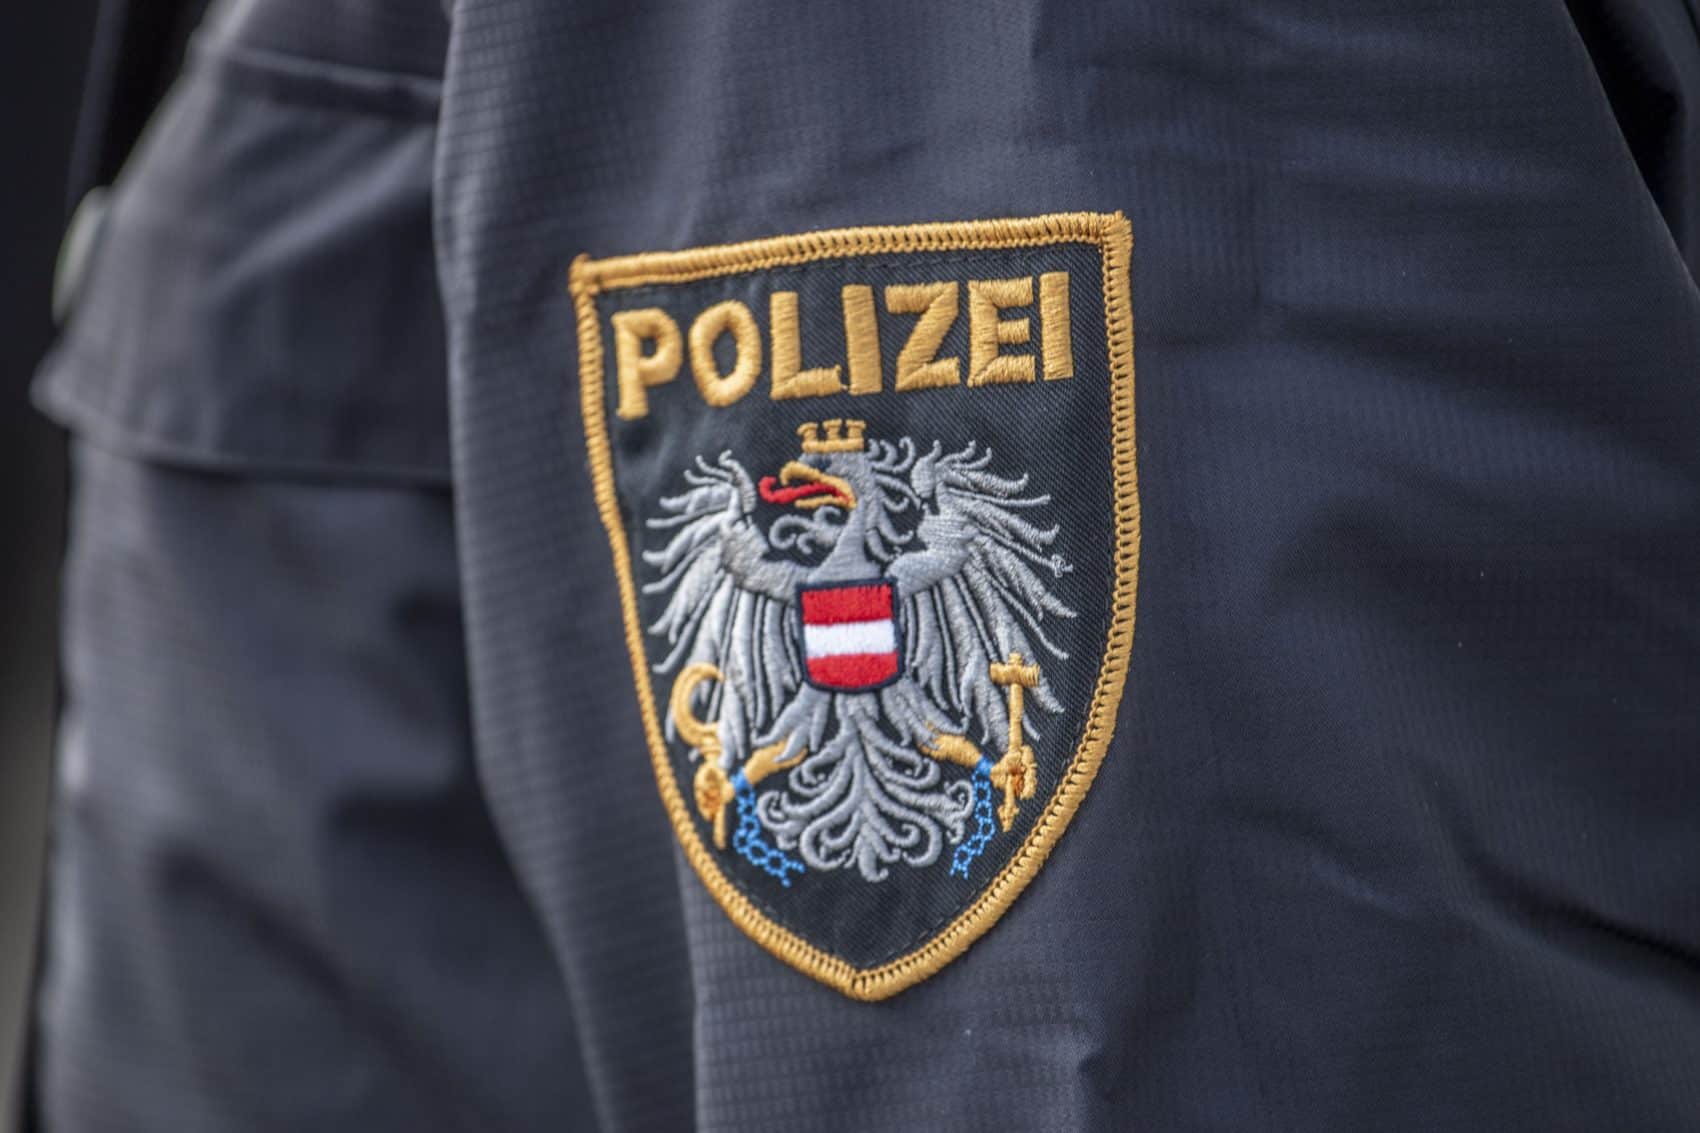 Durch die Sachbeschädigung entstand ein Schaden von mehr als 2.000 Euro. Die Polizei sucht nach den Tätern.